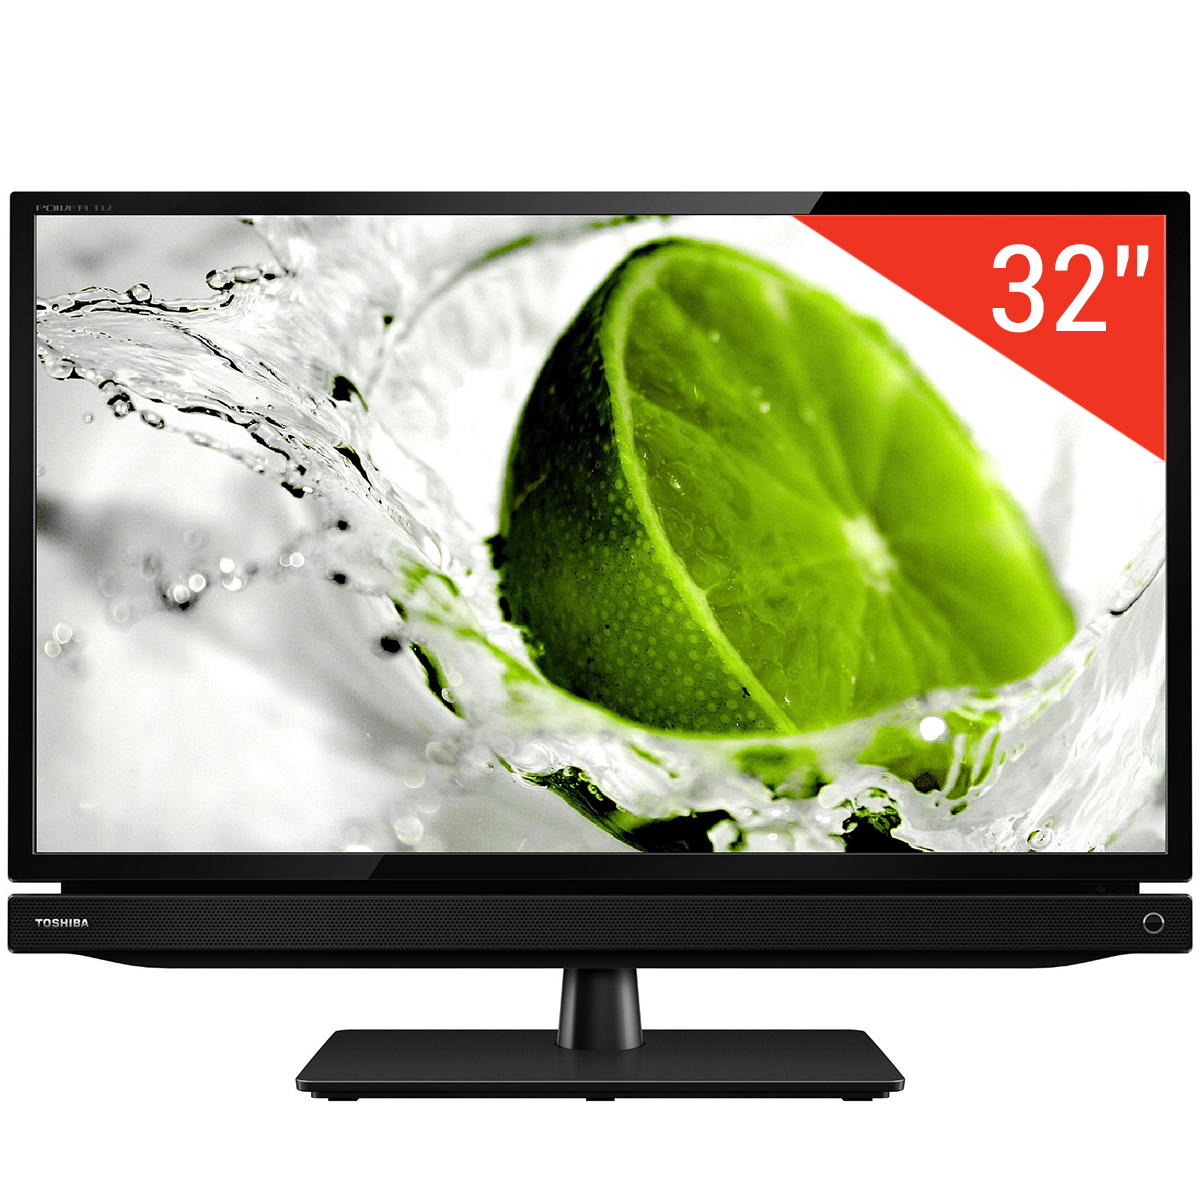 Tivi LED Toshiba 32P1303 chính là sản phẩm tivi giá rẻ lý tưởng cho phòng khách gia đình với những tính năng ưu việt